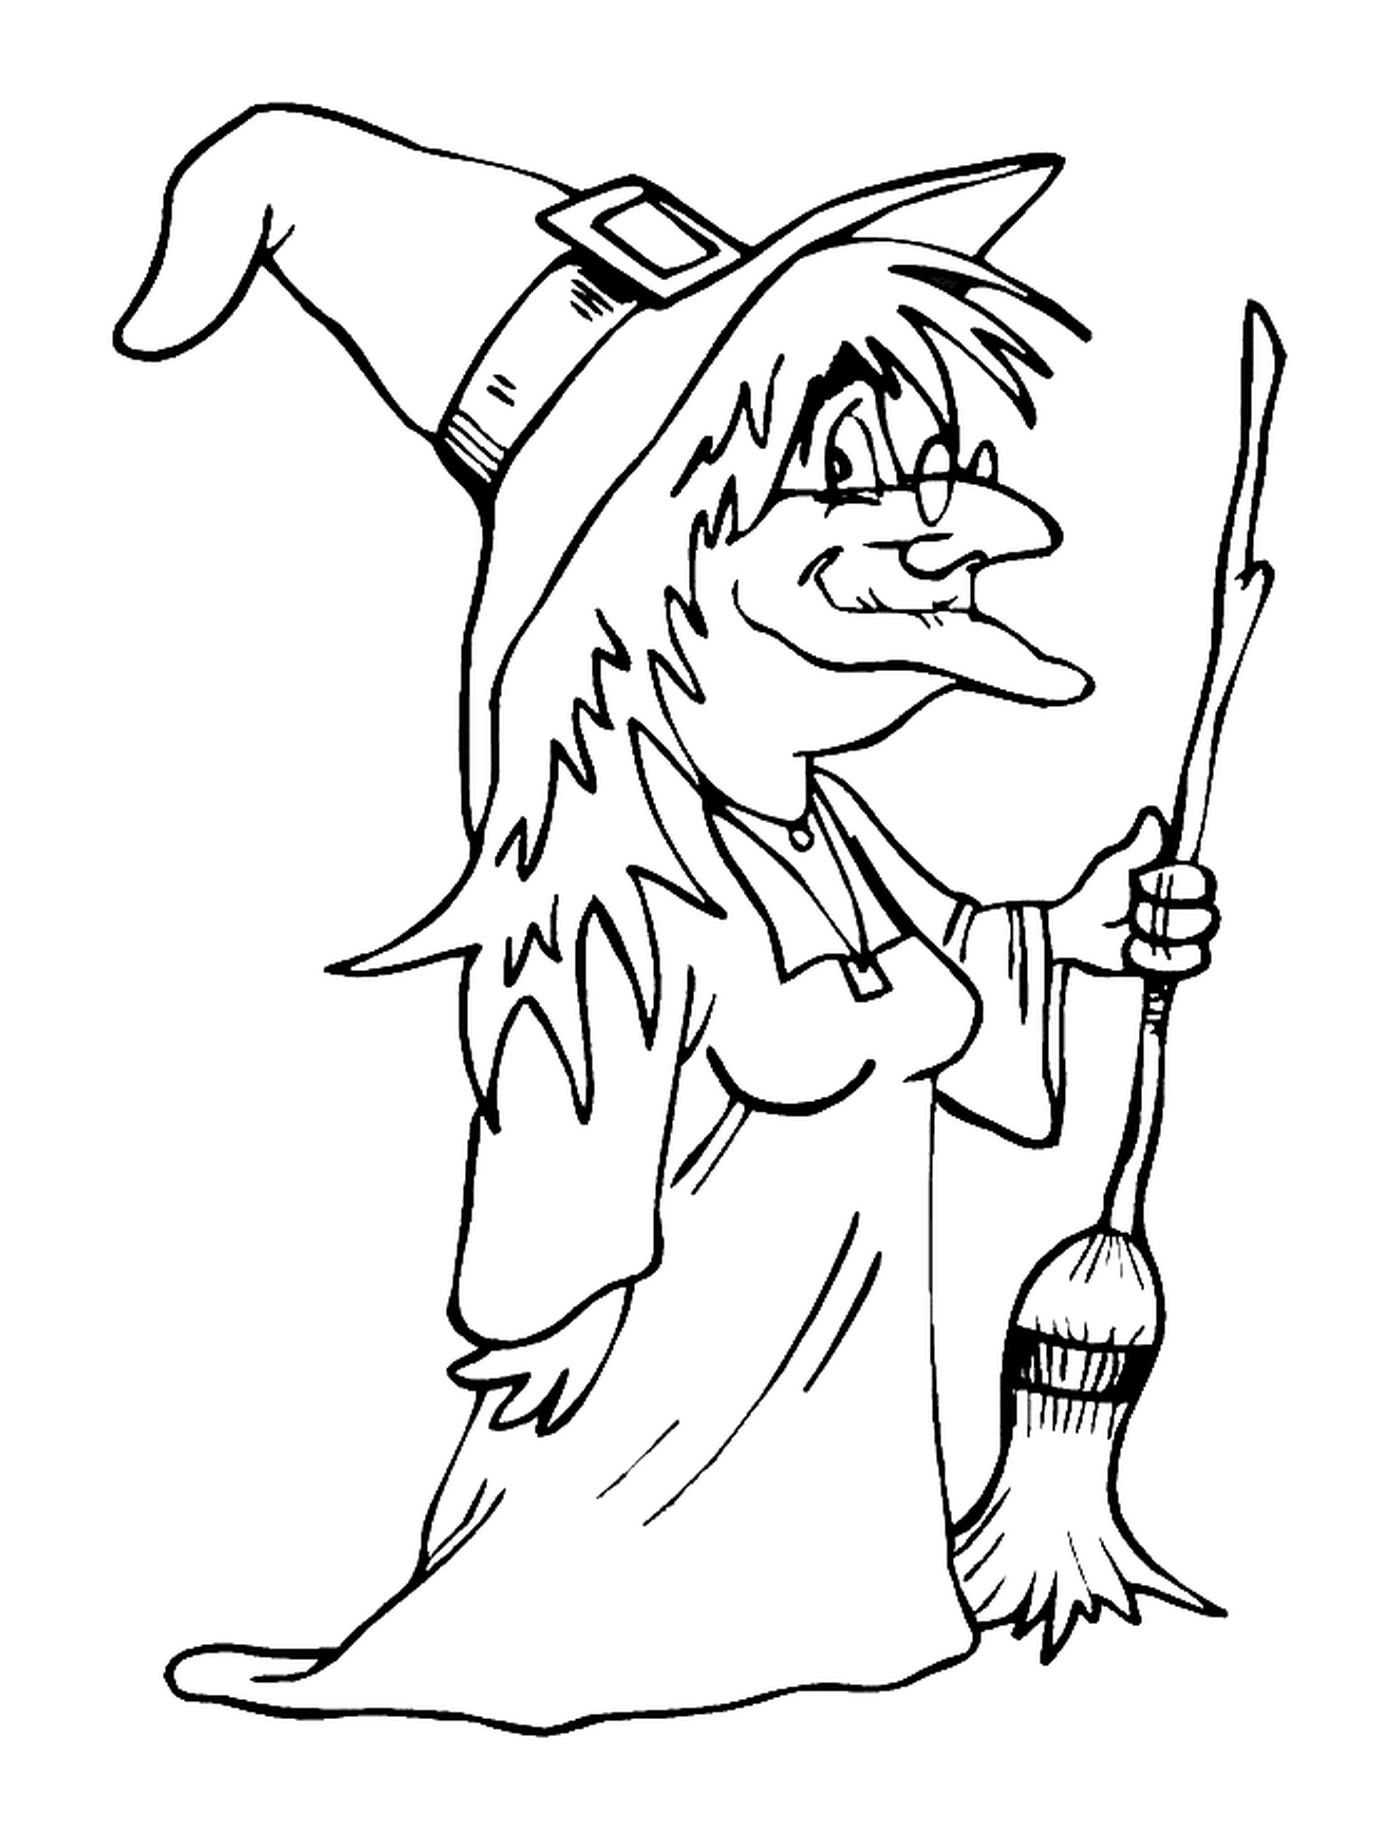  Bruxa velha segurando uma vassoura 